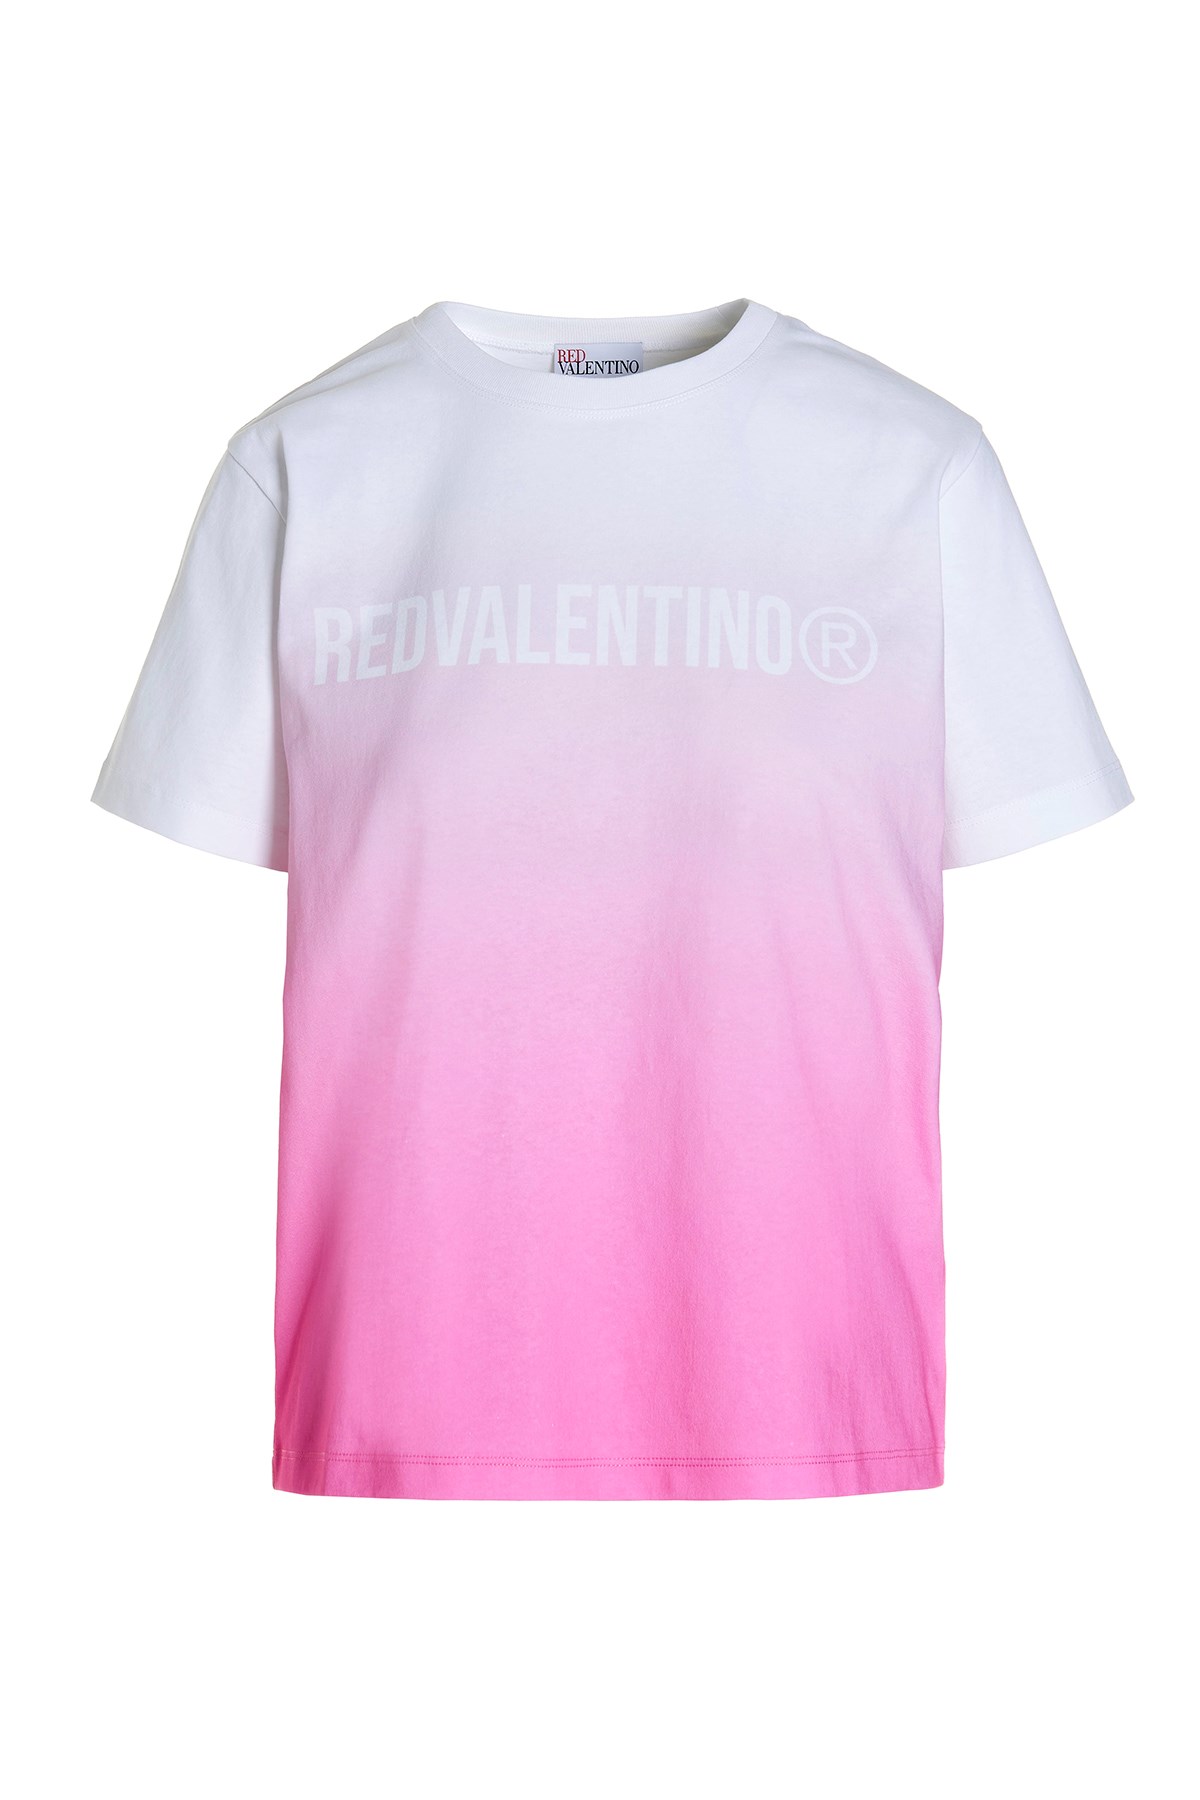 REDVALENTINO T-Shirt Mit Ombre-Farbung